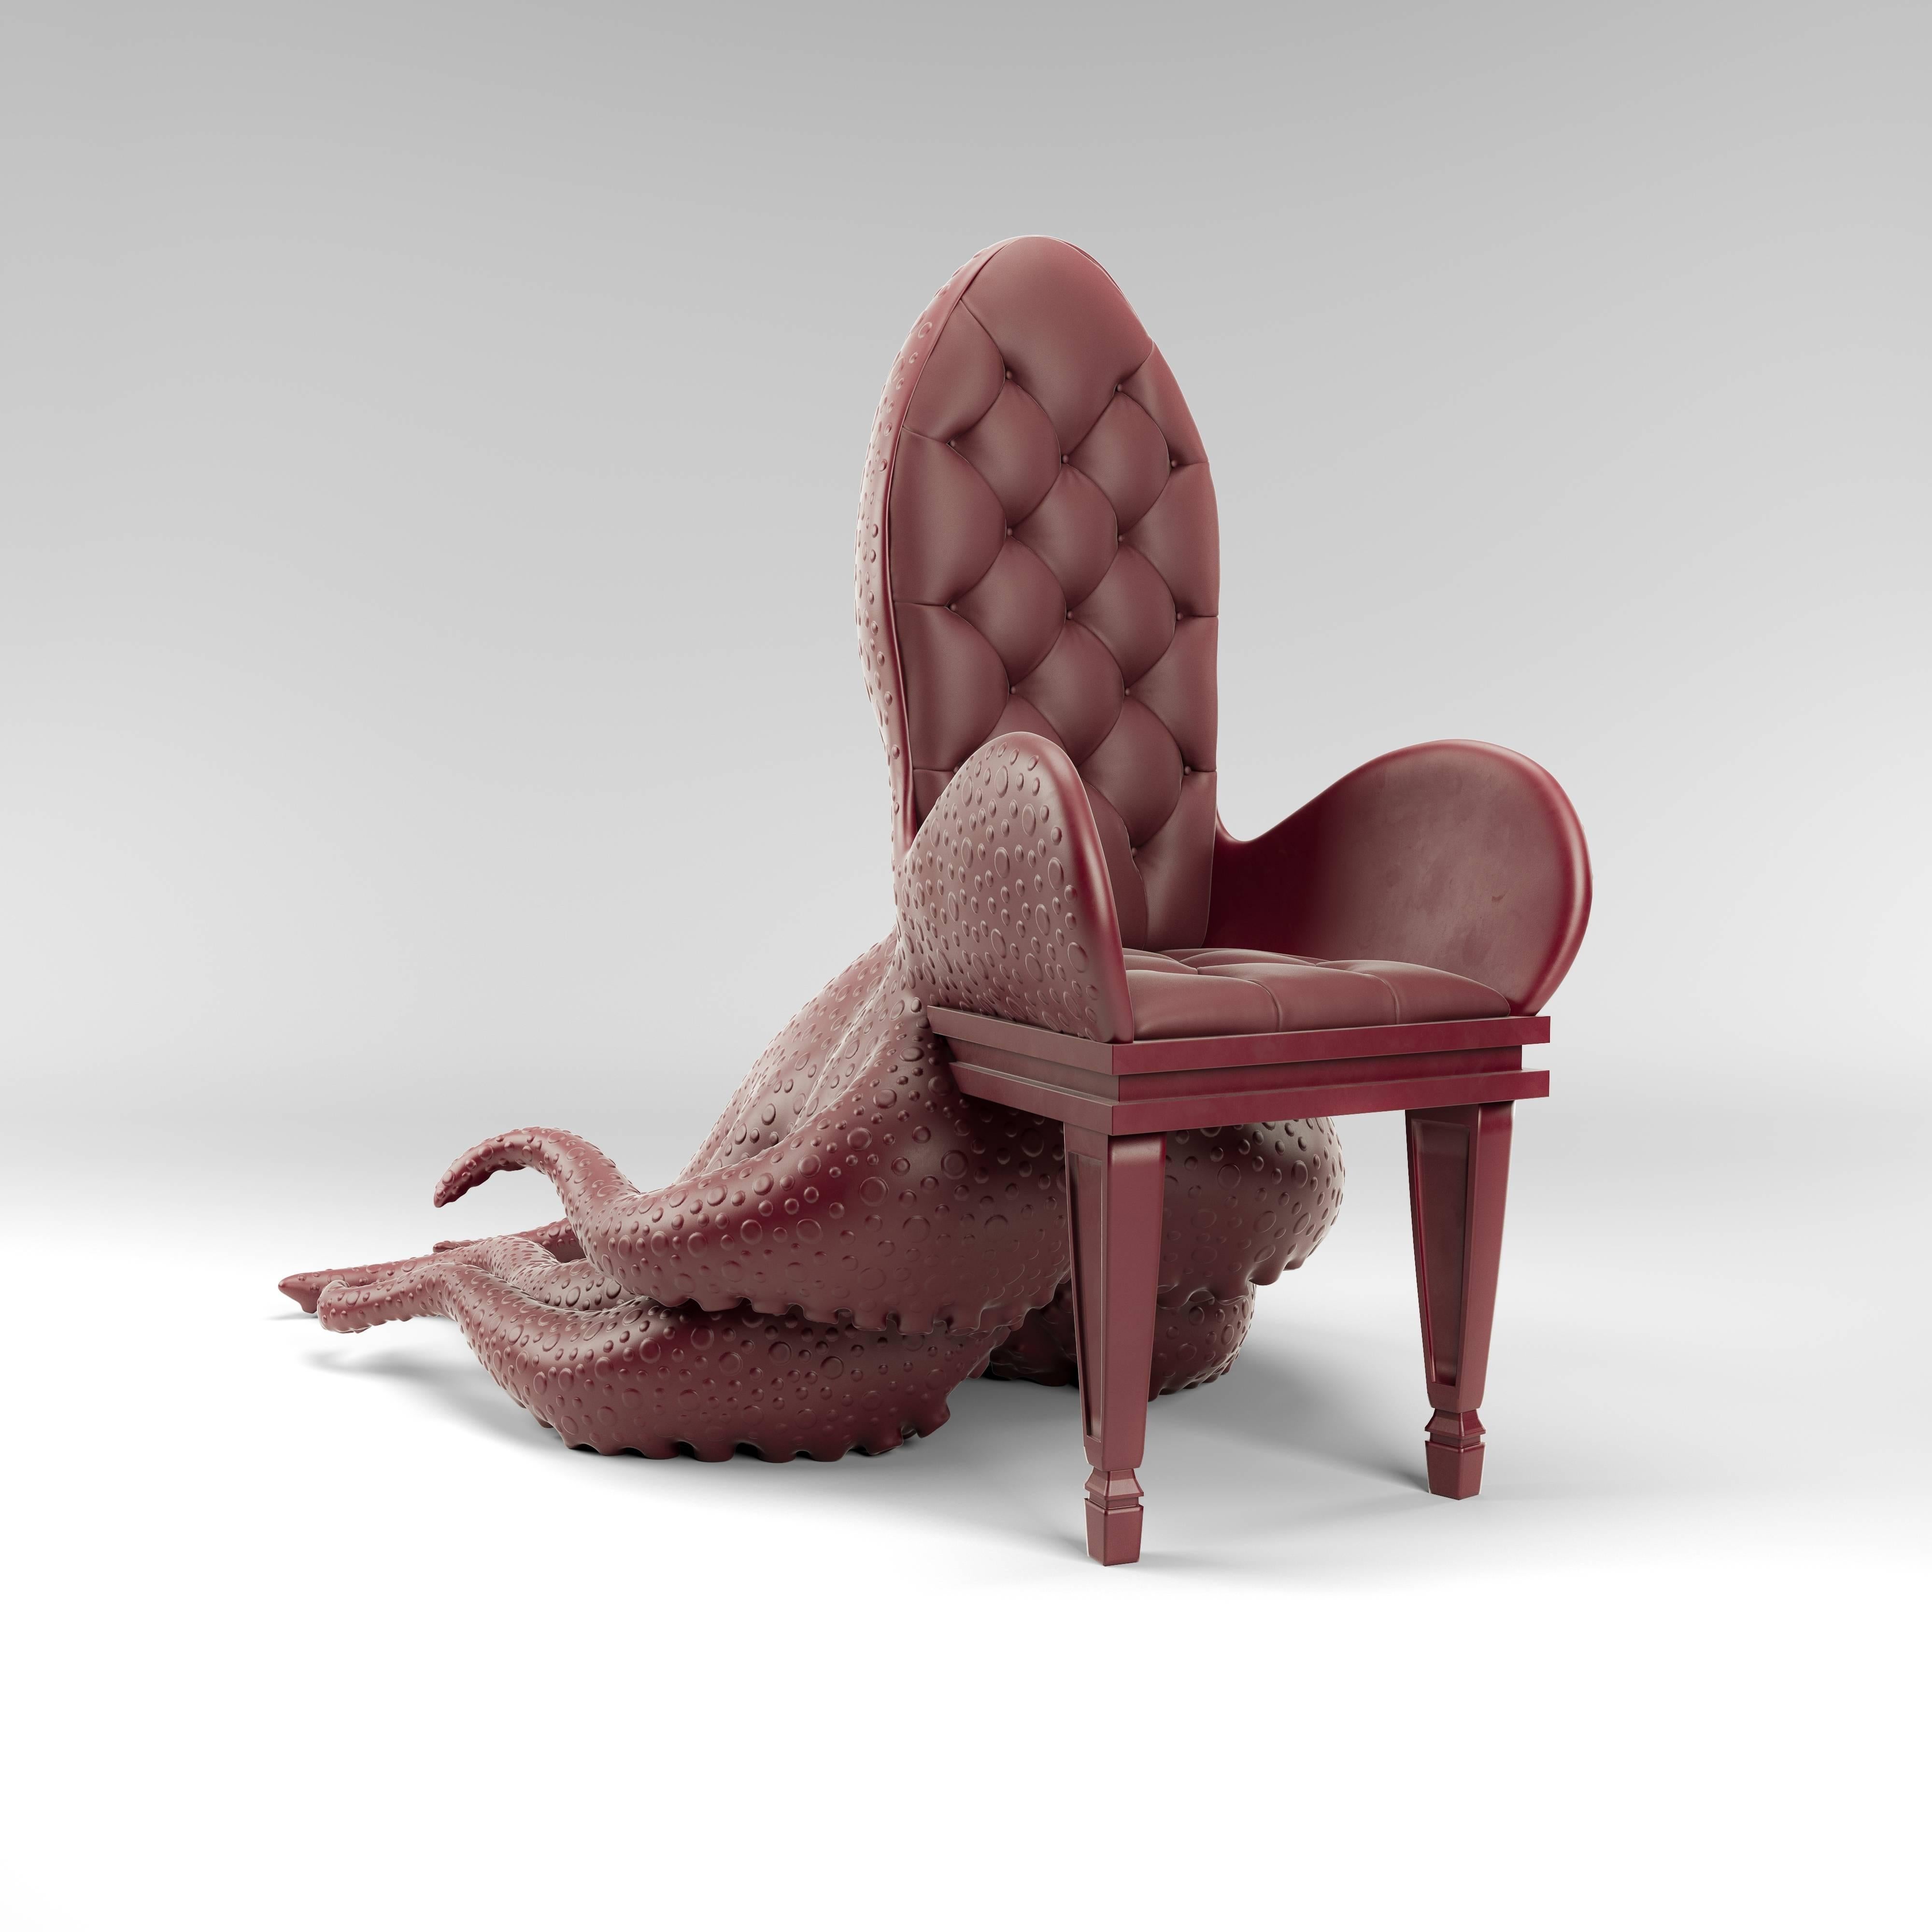 squid chair